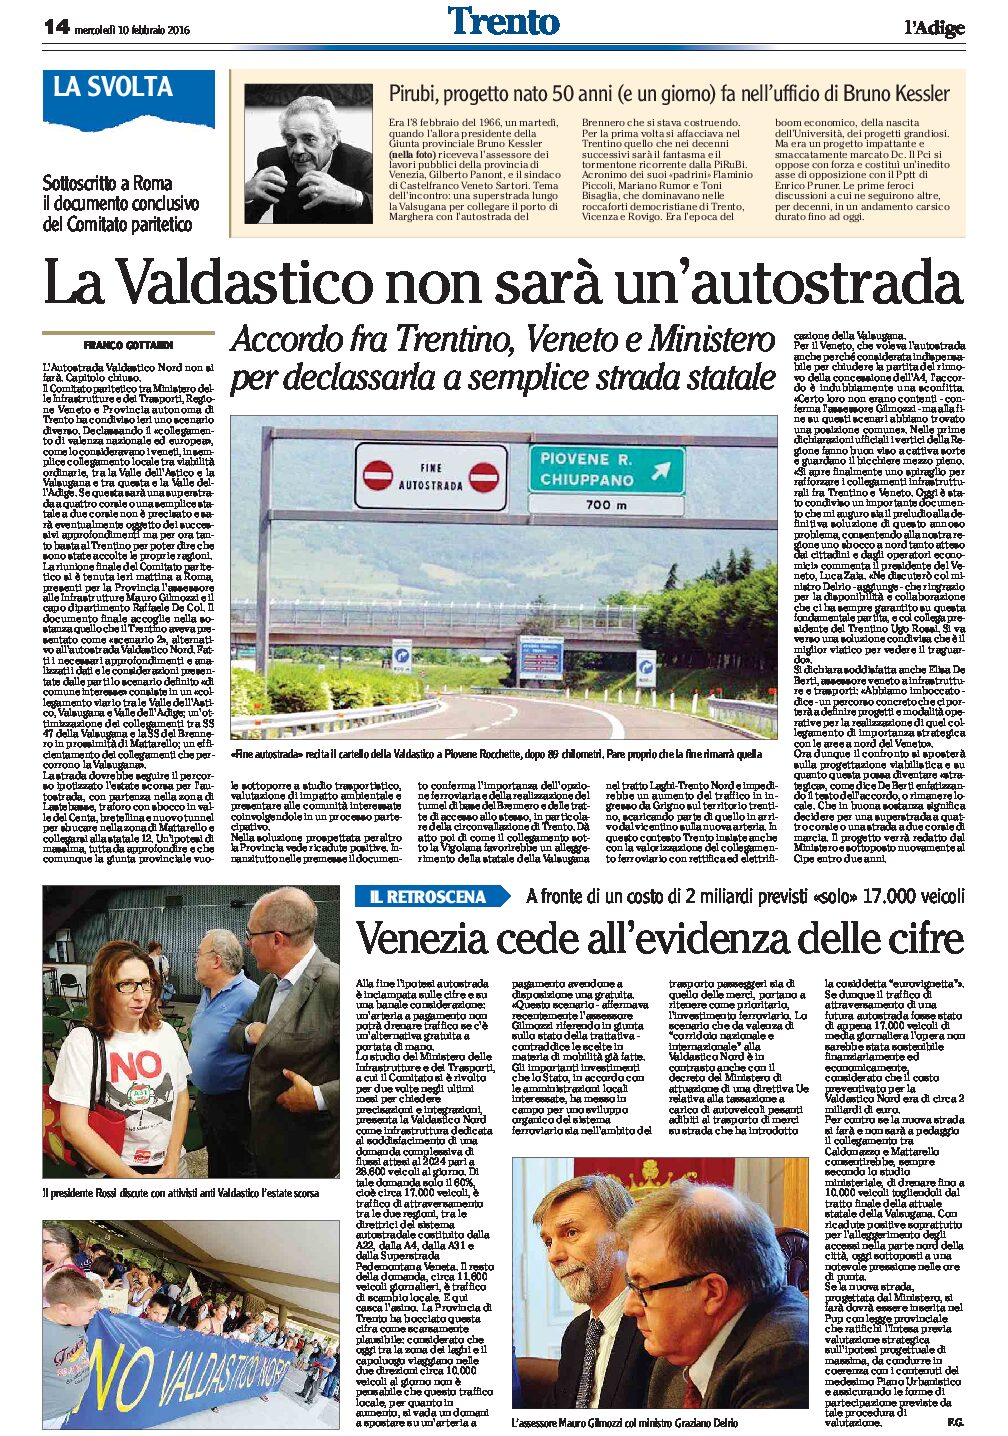 Valdastico: non sarà un’autostrada. Accordo fra Trentino, Veneto e Ministero